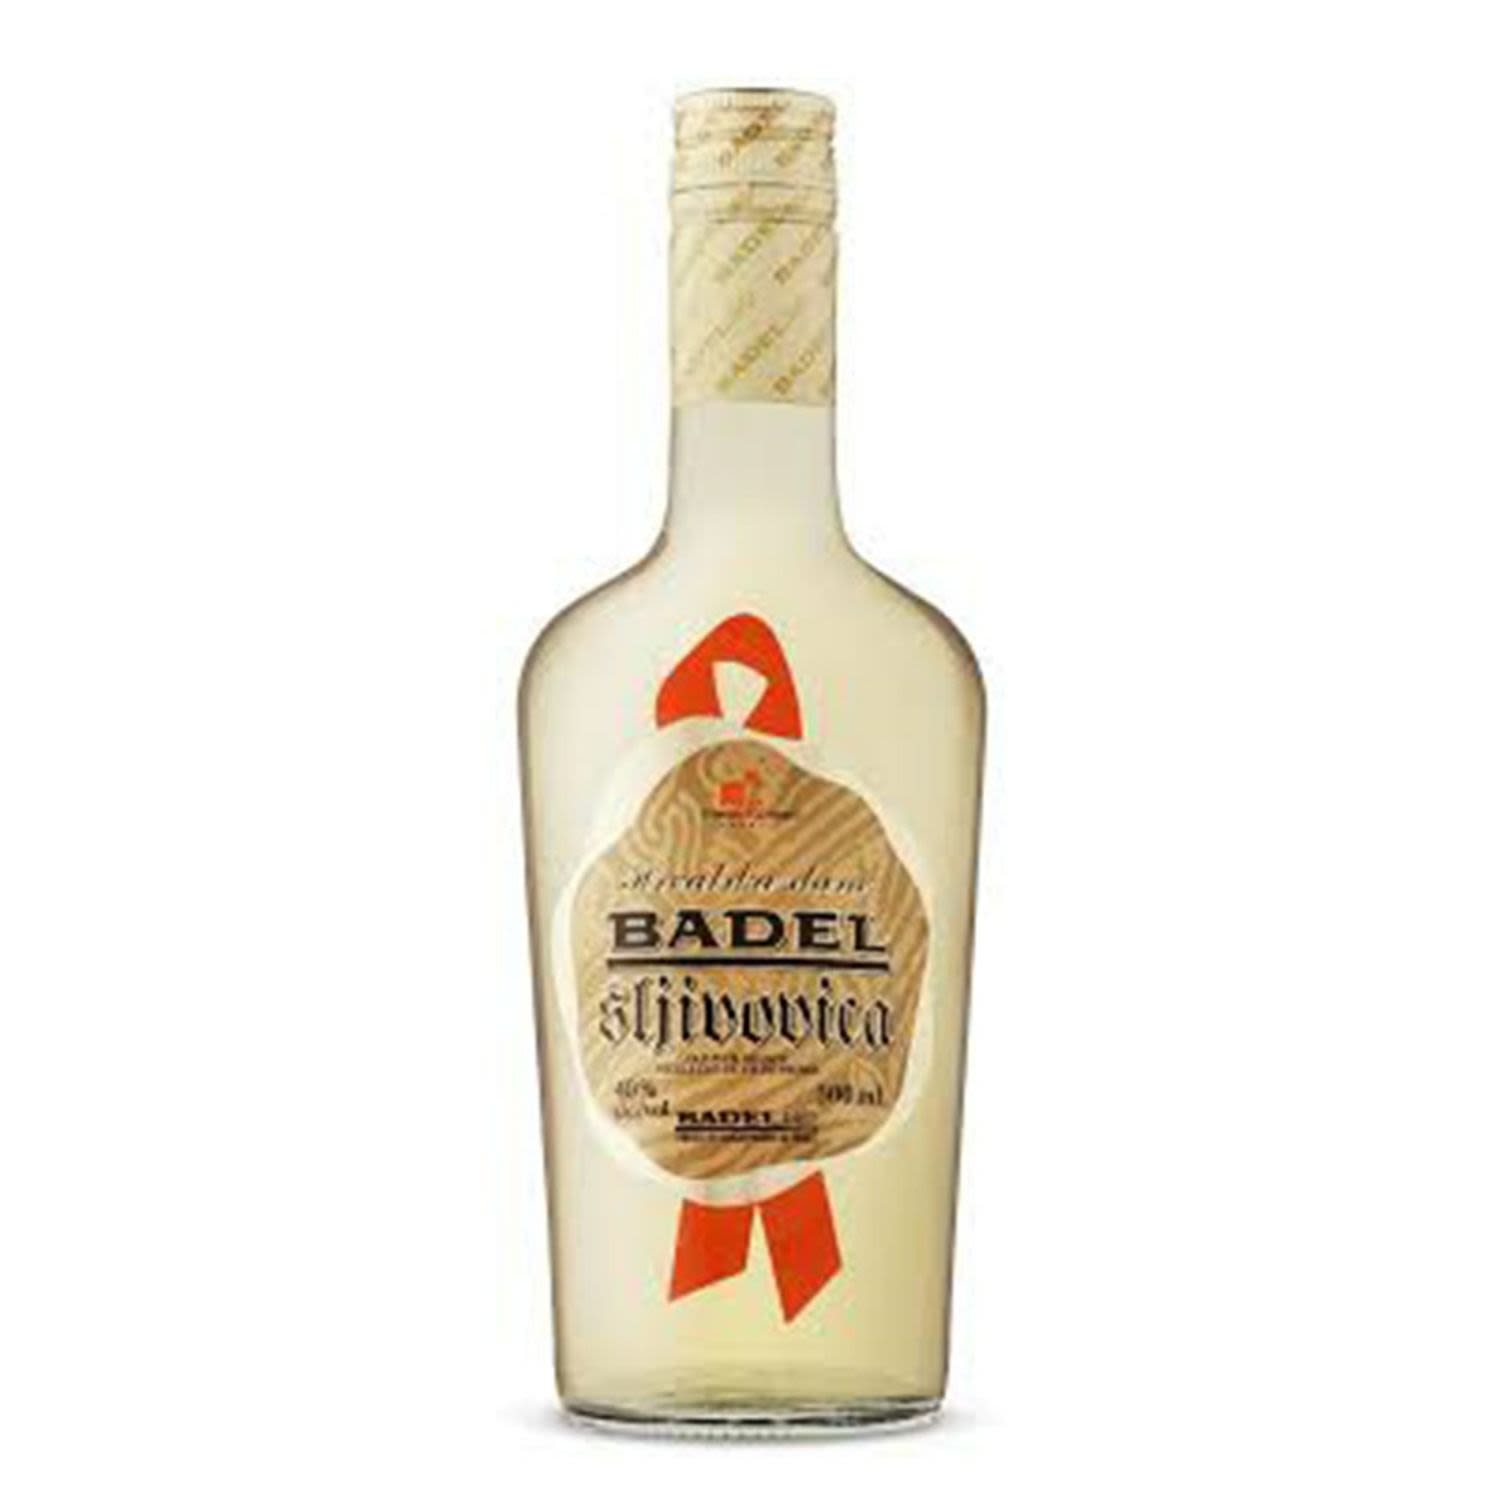 Badel Sljivovica 1L Bottle